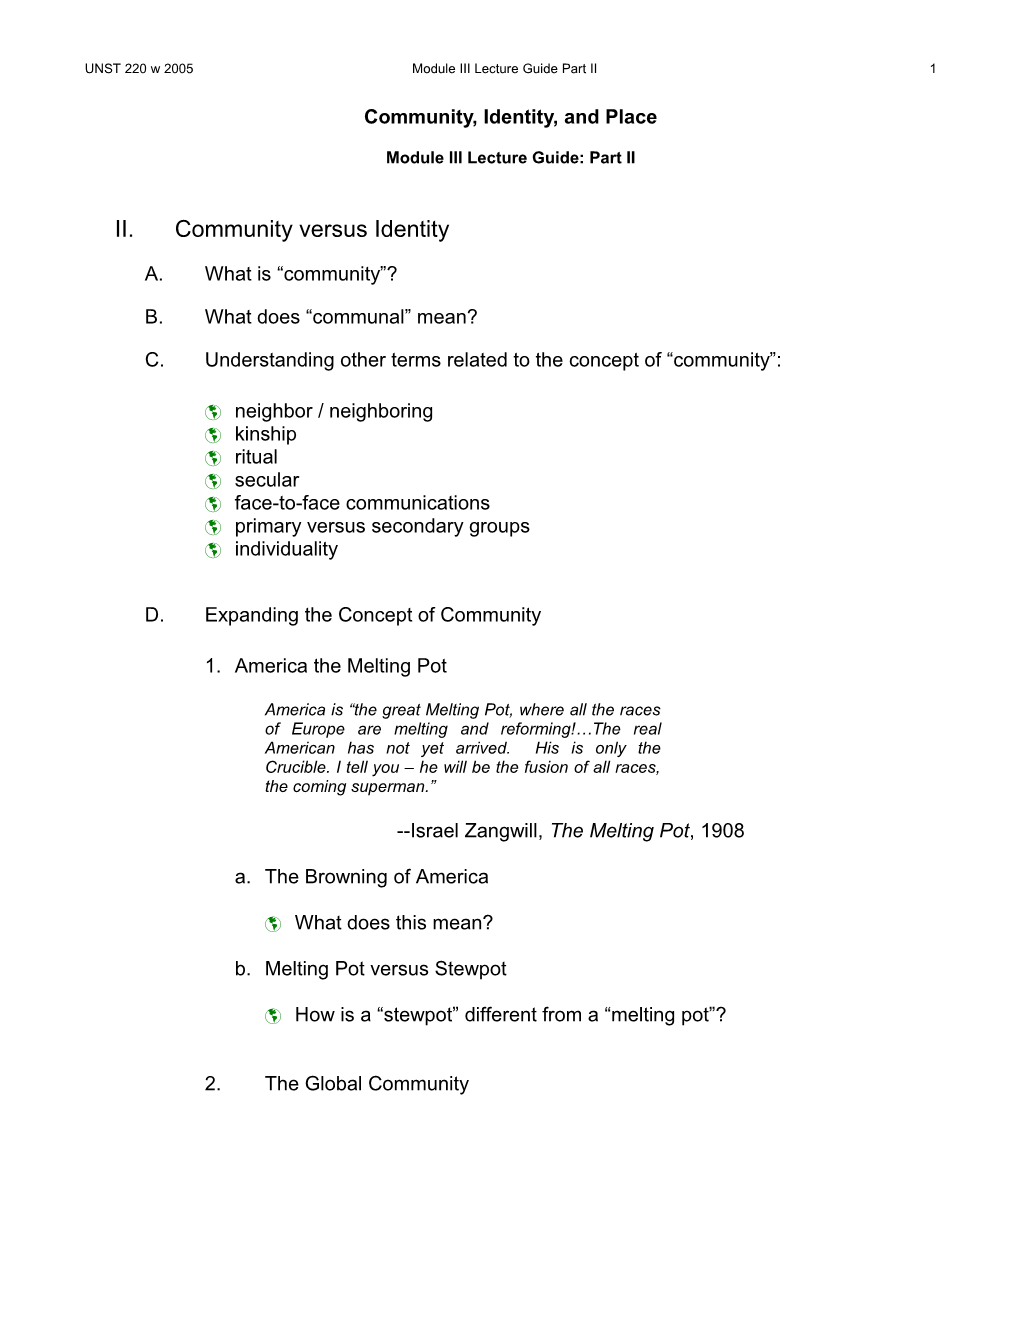 UNST 220 Understanding Communities, Module III Lecture Guide, Part II